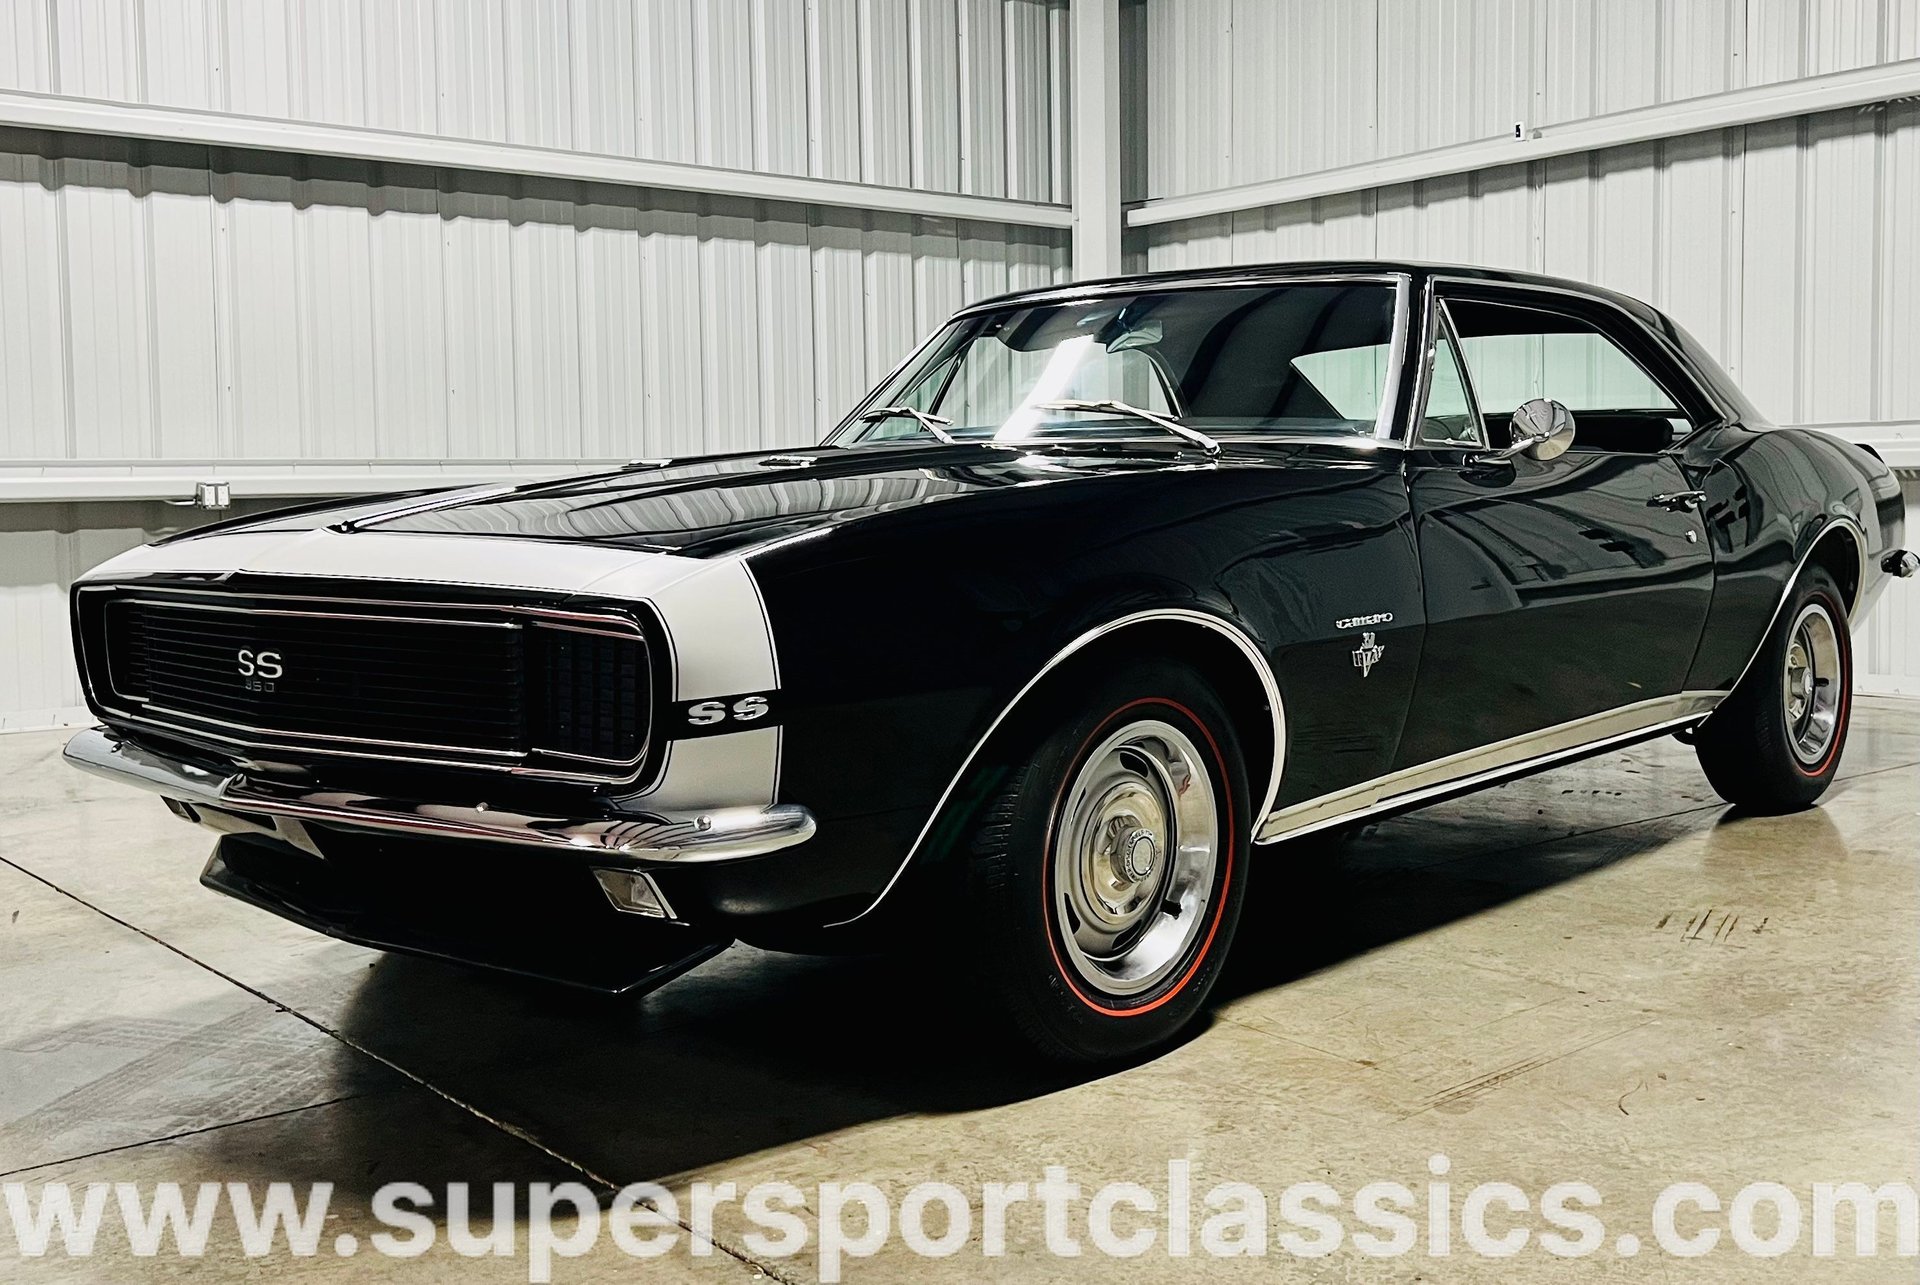 1967 Chevrolet Camaro | SuperSport Classics